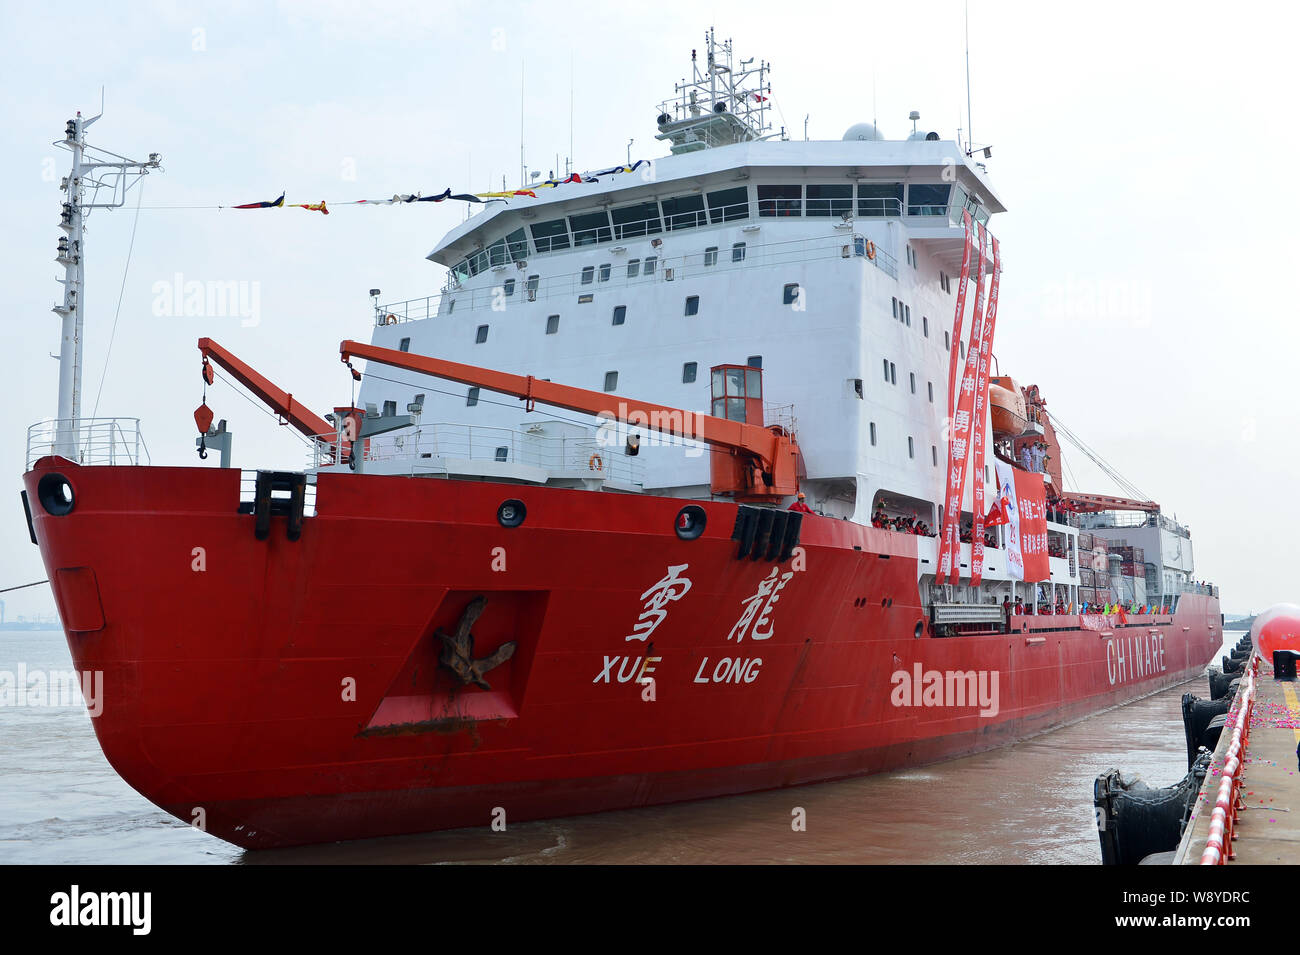 --FILE -- Die Xue Long icebreaker (Snow Dragon), die Chinesische Wissenschaftler während ihrer neunundzwanzigsten Antarktisexpedition verlässt die Nansha Port in Gua Stockfoto